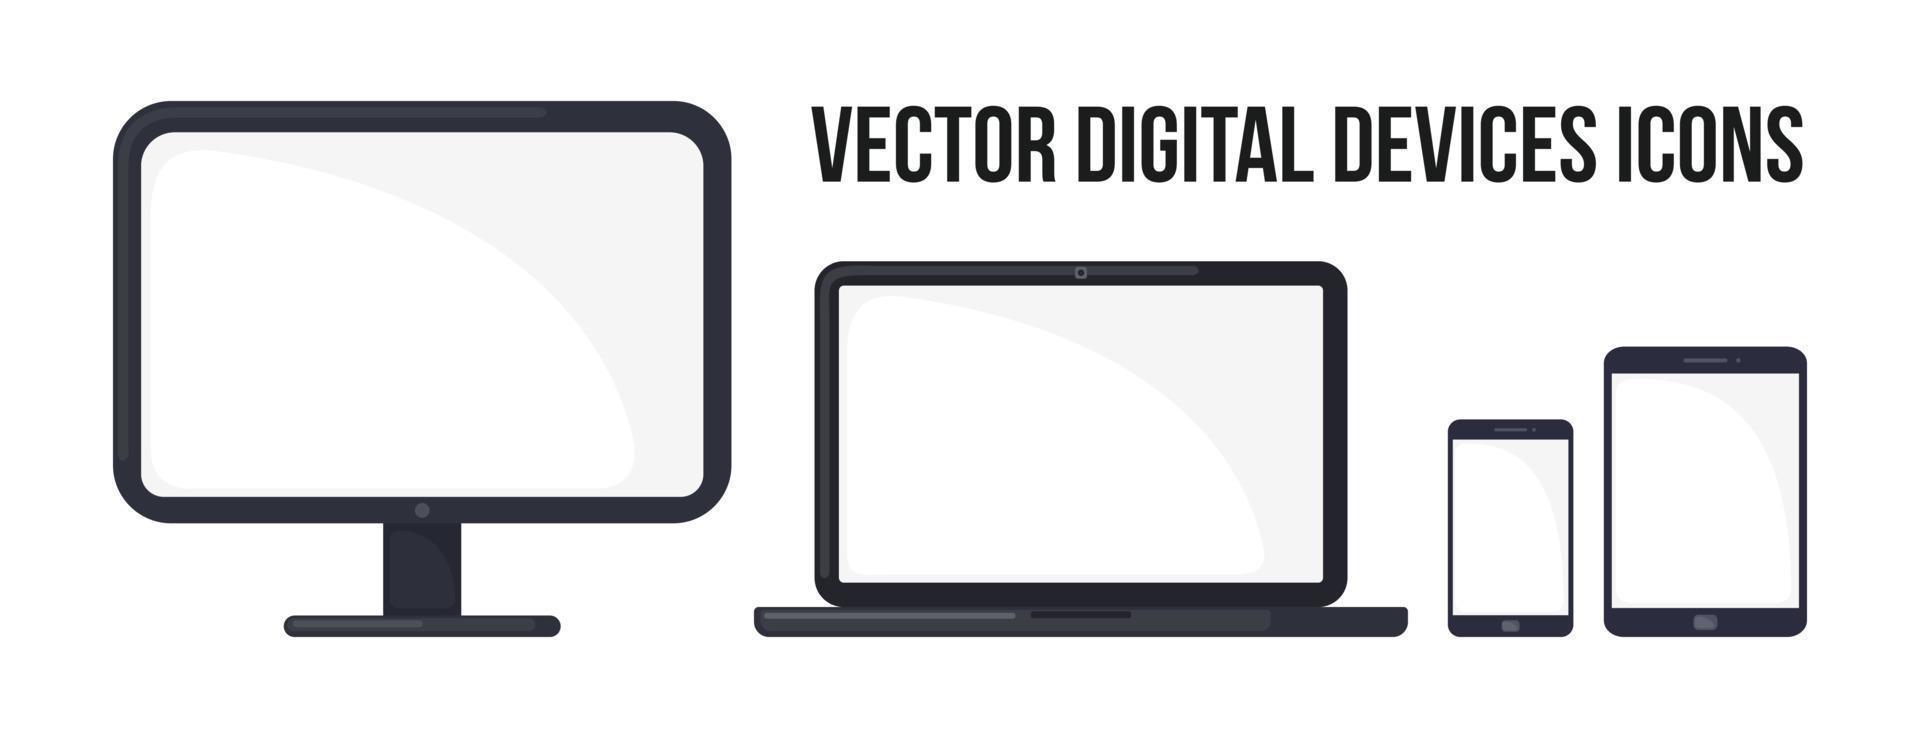 Symbol für digitale Geräte im flachen Stil isoliert auf weißem Hintergrund. computermonitor, laptop, handy und tablet. Vektor-Illustration. vektor